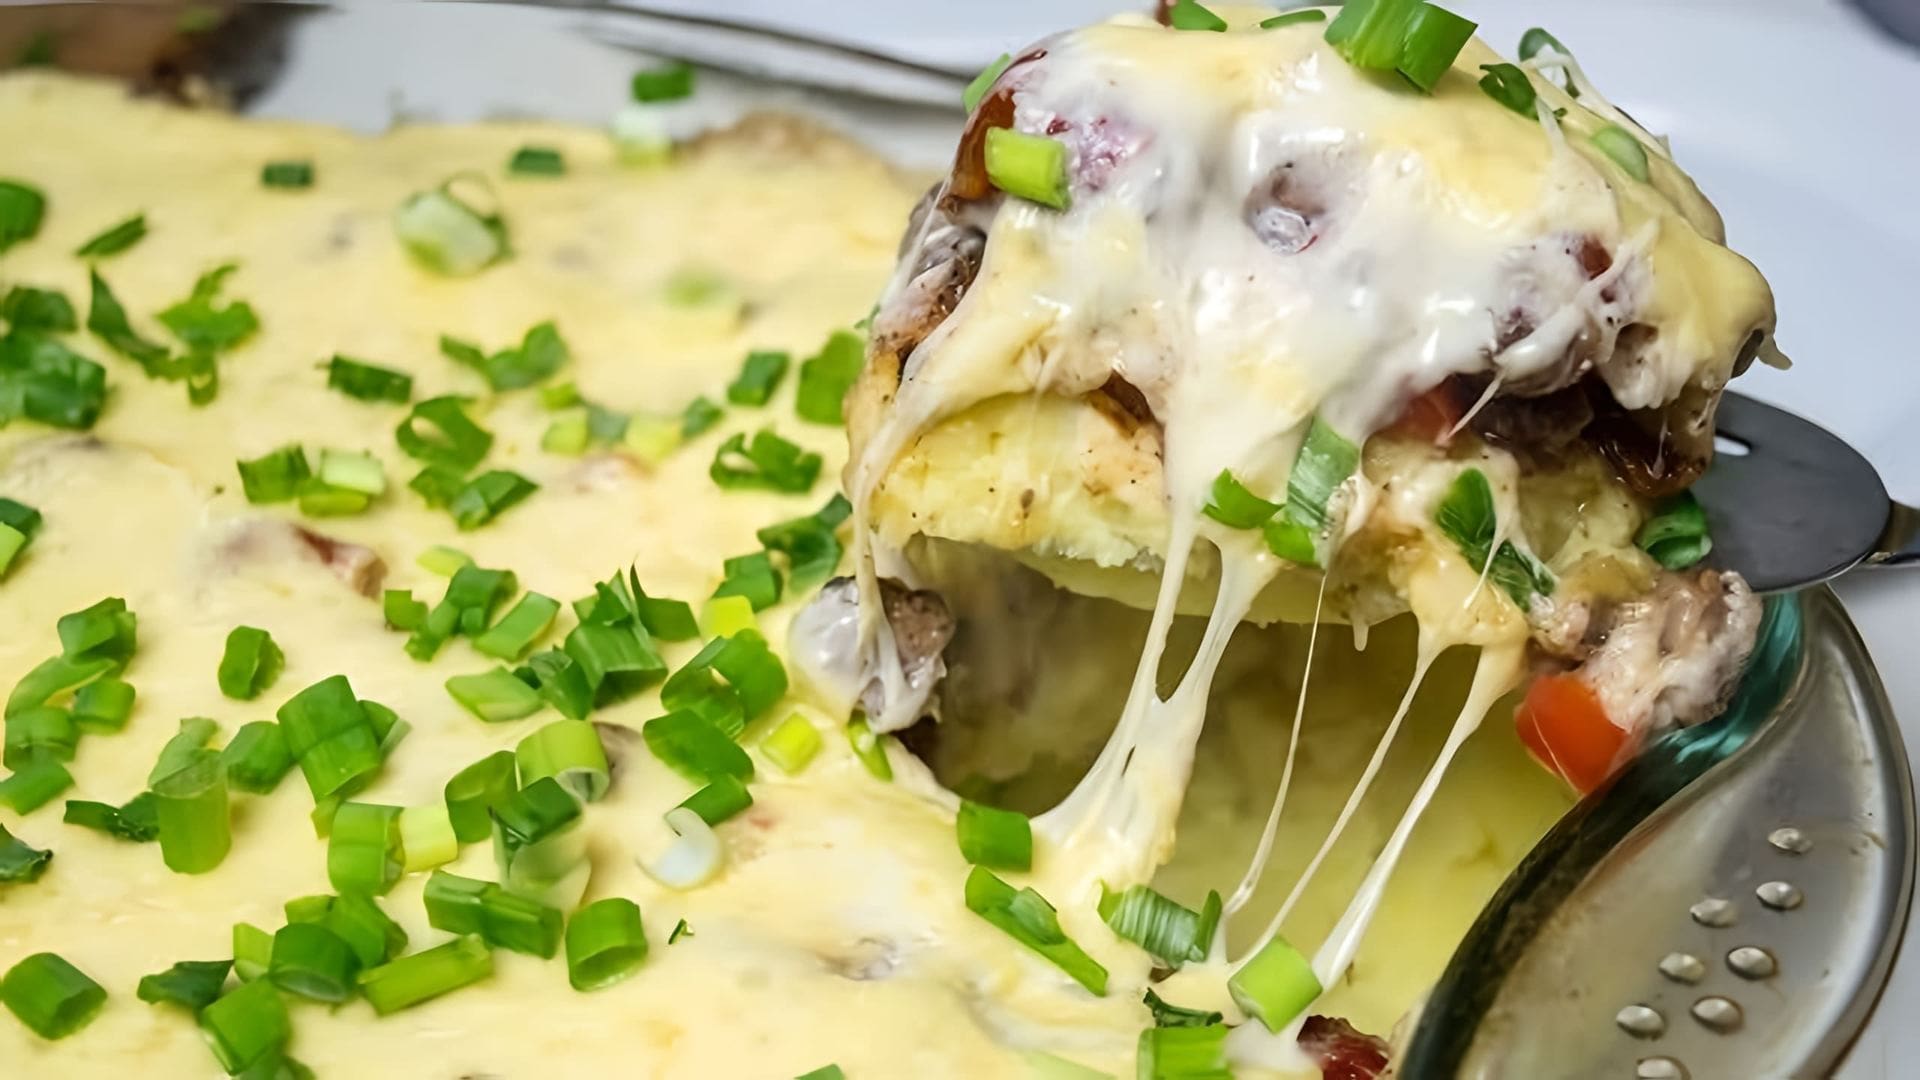 В этом видео демонстрируется процесс приготовления картофельной запеканки с мясом и соусом Бешамель по рецепту из Instagram